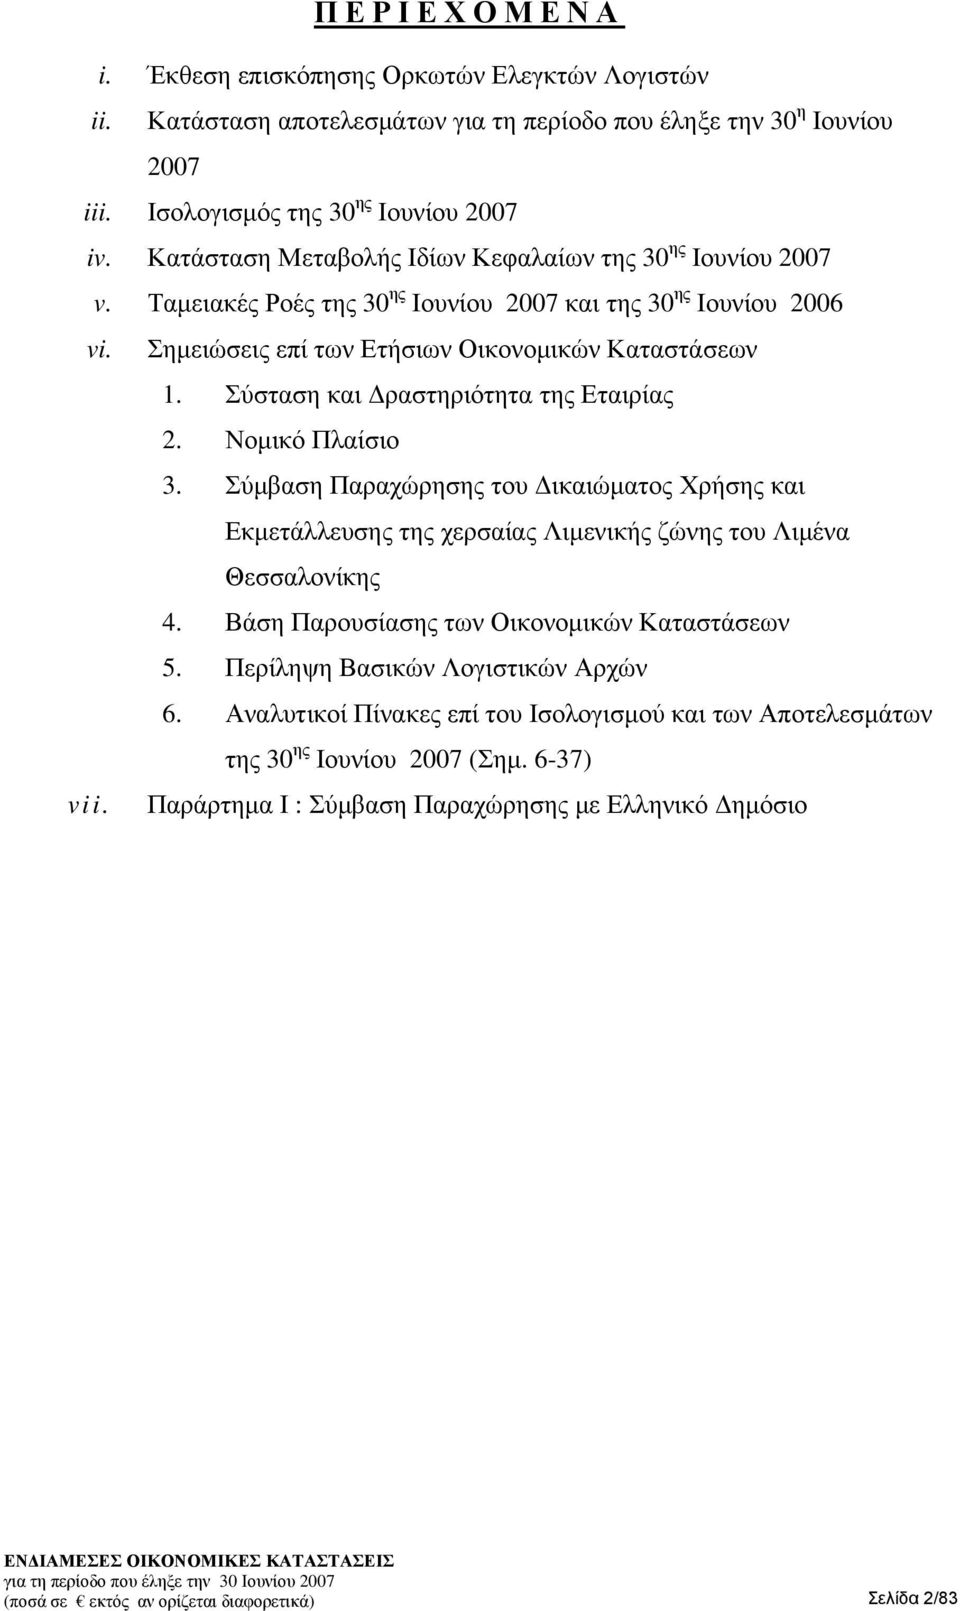 Σύσταση και Δραστηριότητα της Εταιρίας 2. Νομικό Πλαίσιο 3. Σύμβαση Παραχώρησης του Δικαιώματος Χρήσης και Εκμετάλλευσης της χερσαίας Λιμενικής ζώνης του Λιμένα Θεσσαλονίκης 4.